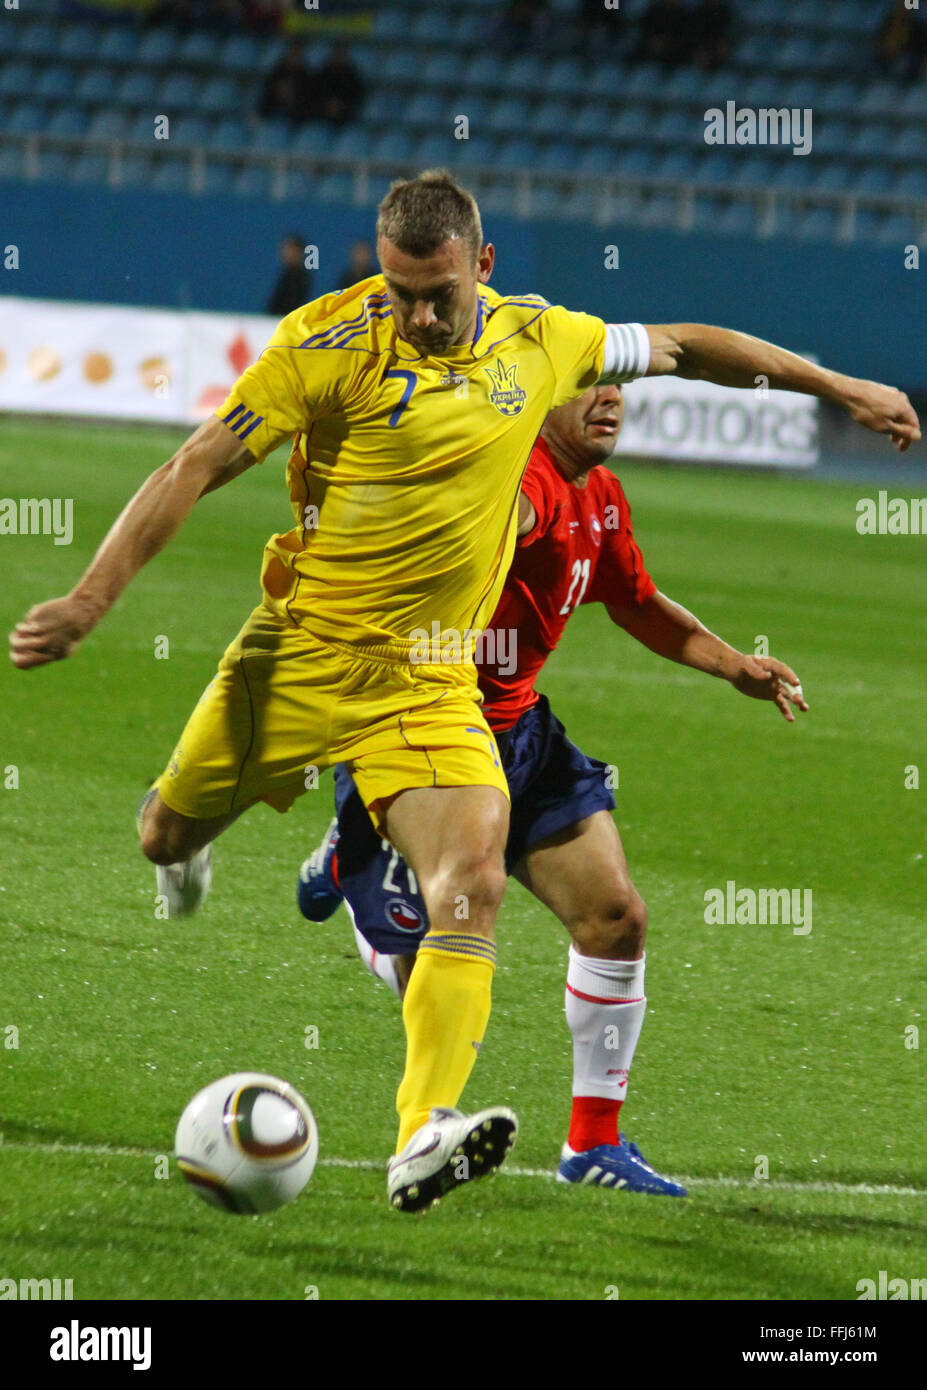 KYIV, UKRAINE - SEPTEMBER 7: Andriy Shevchenko of Ukraine (in yellow) kicks the ball during friendly game against Chile on September 7, 2010 in Kyiv, Ukraine Stock Photo